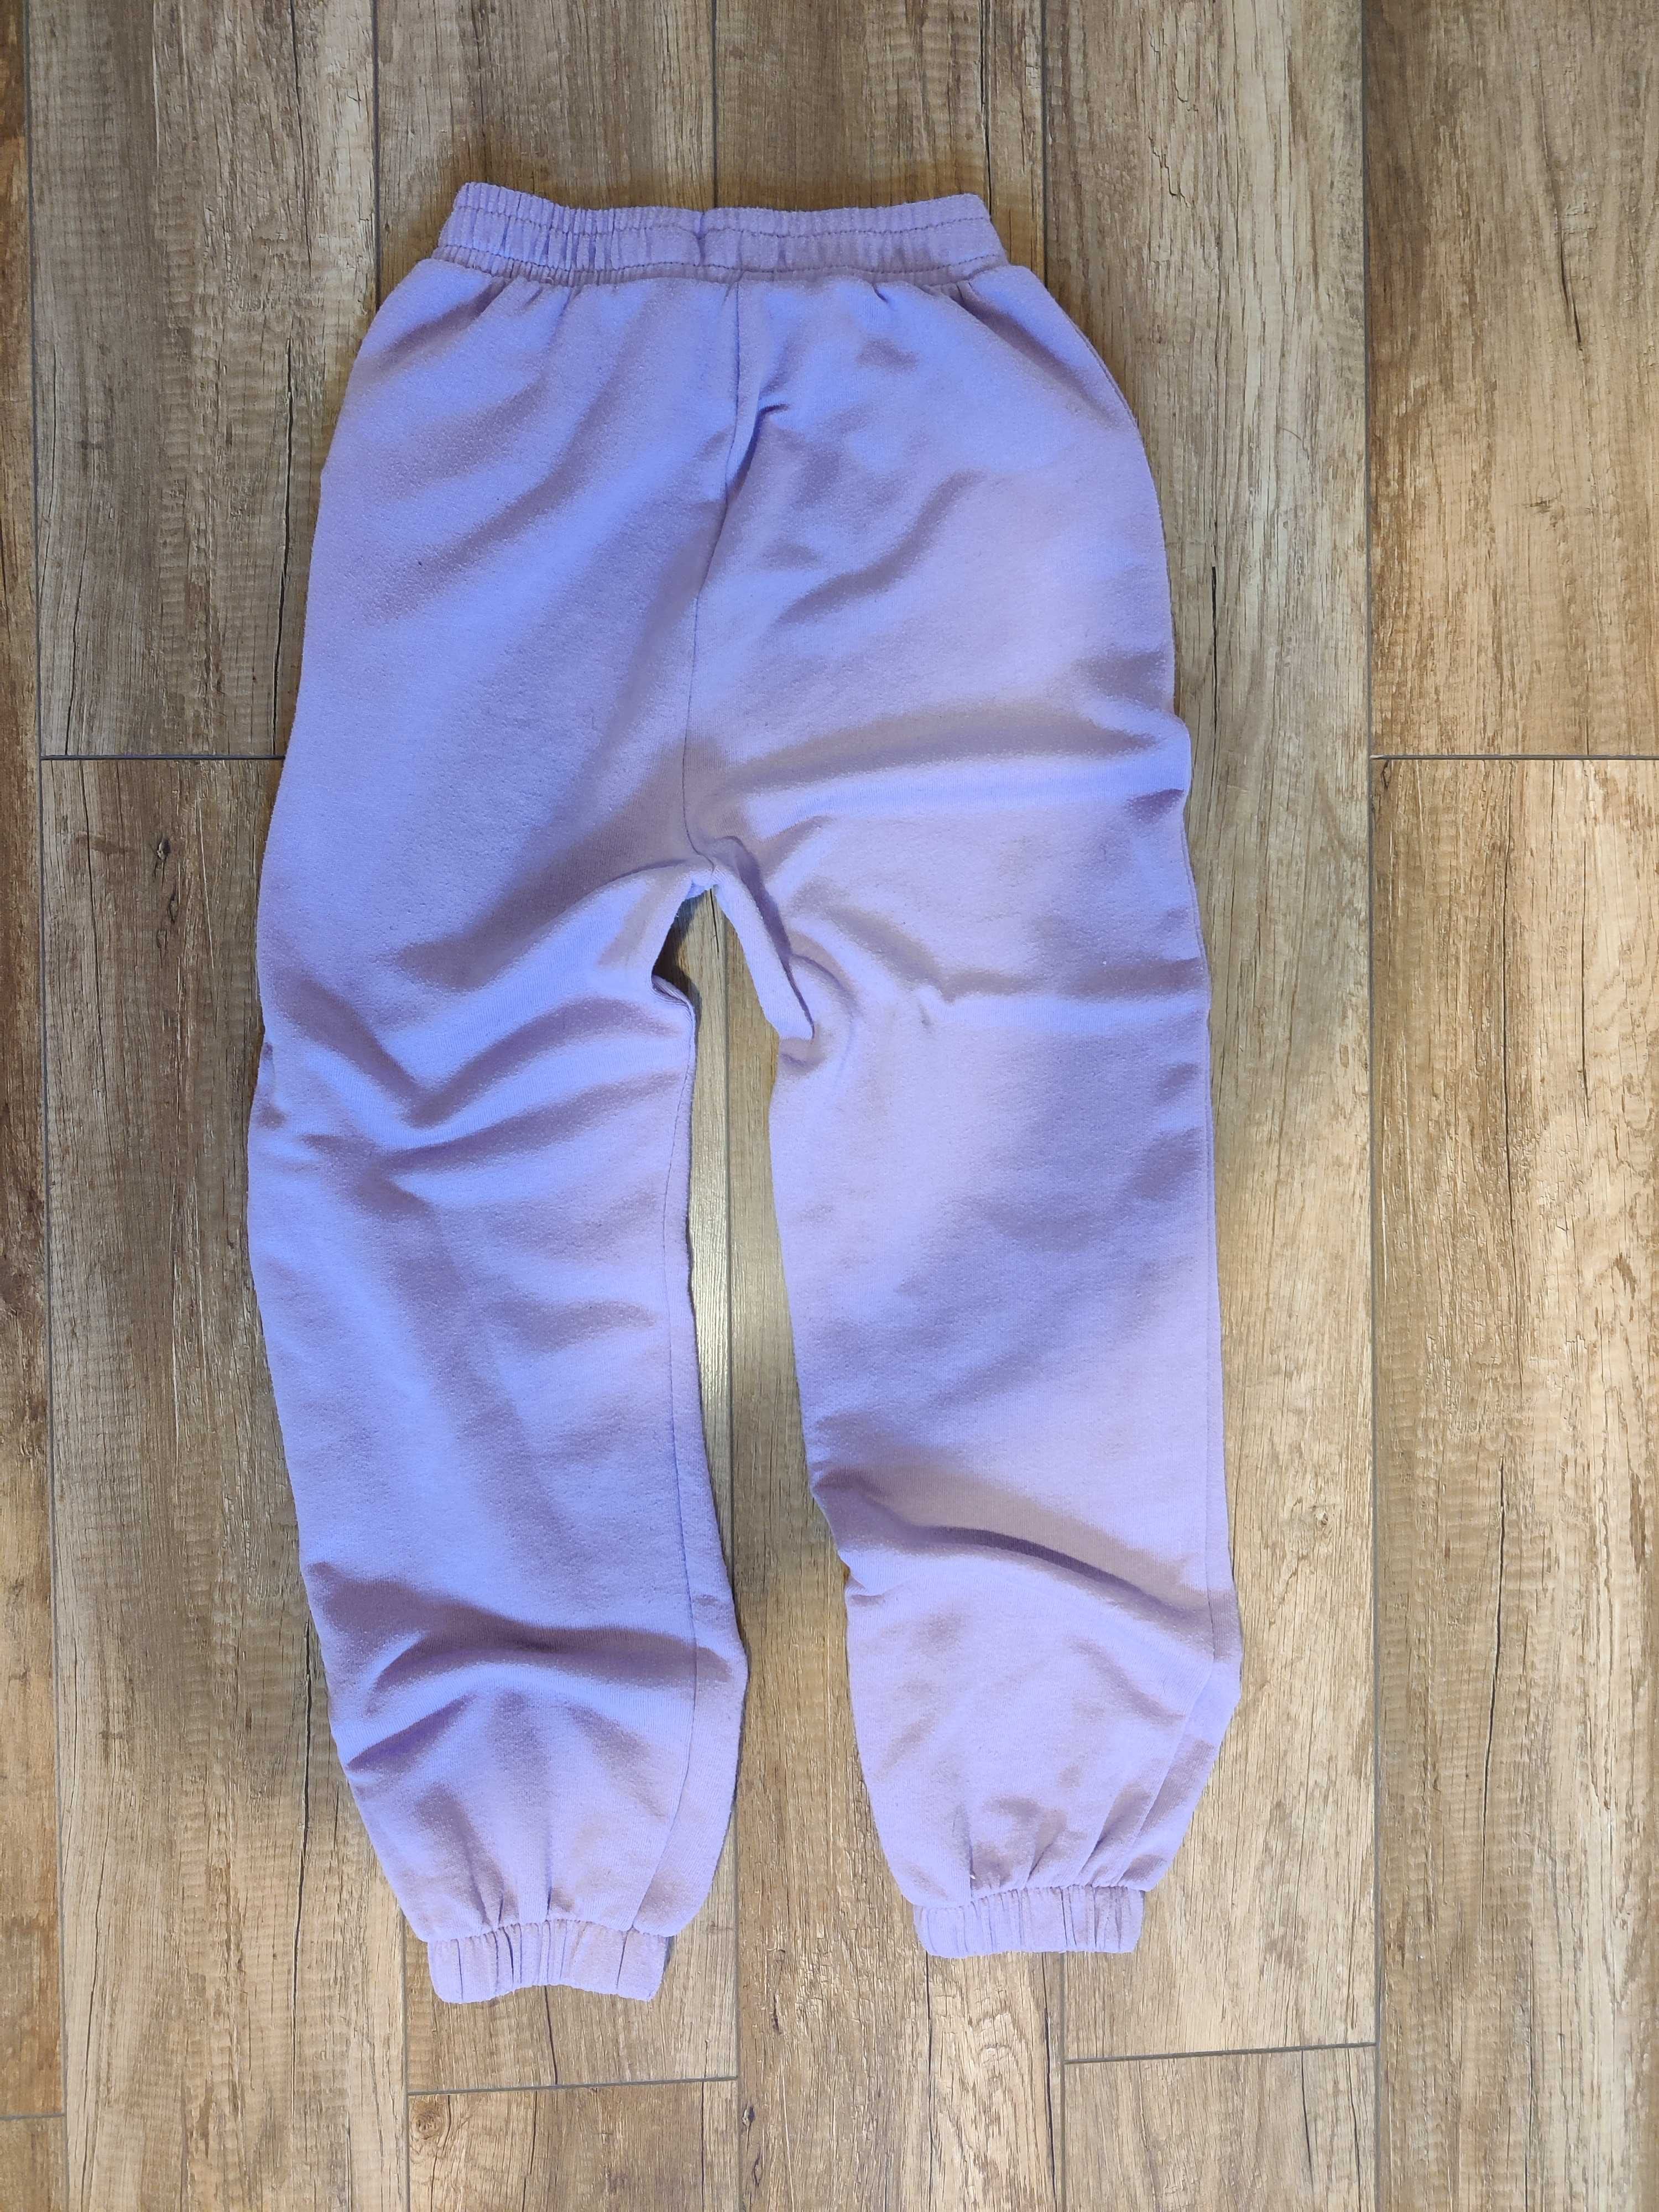 Spodnie Zara dresowe fioletowe r.S 36